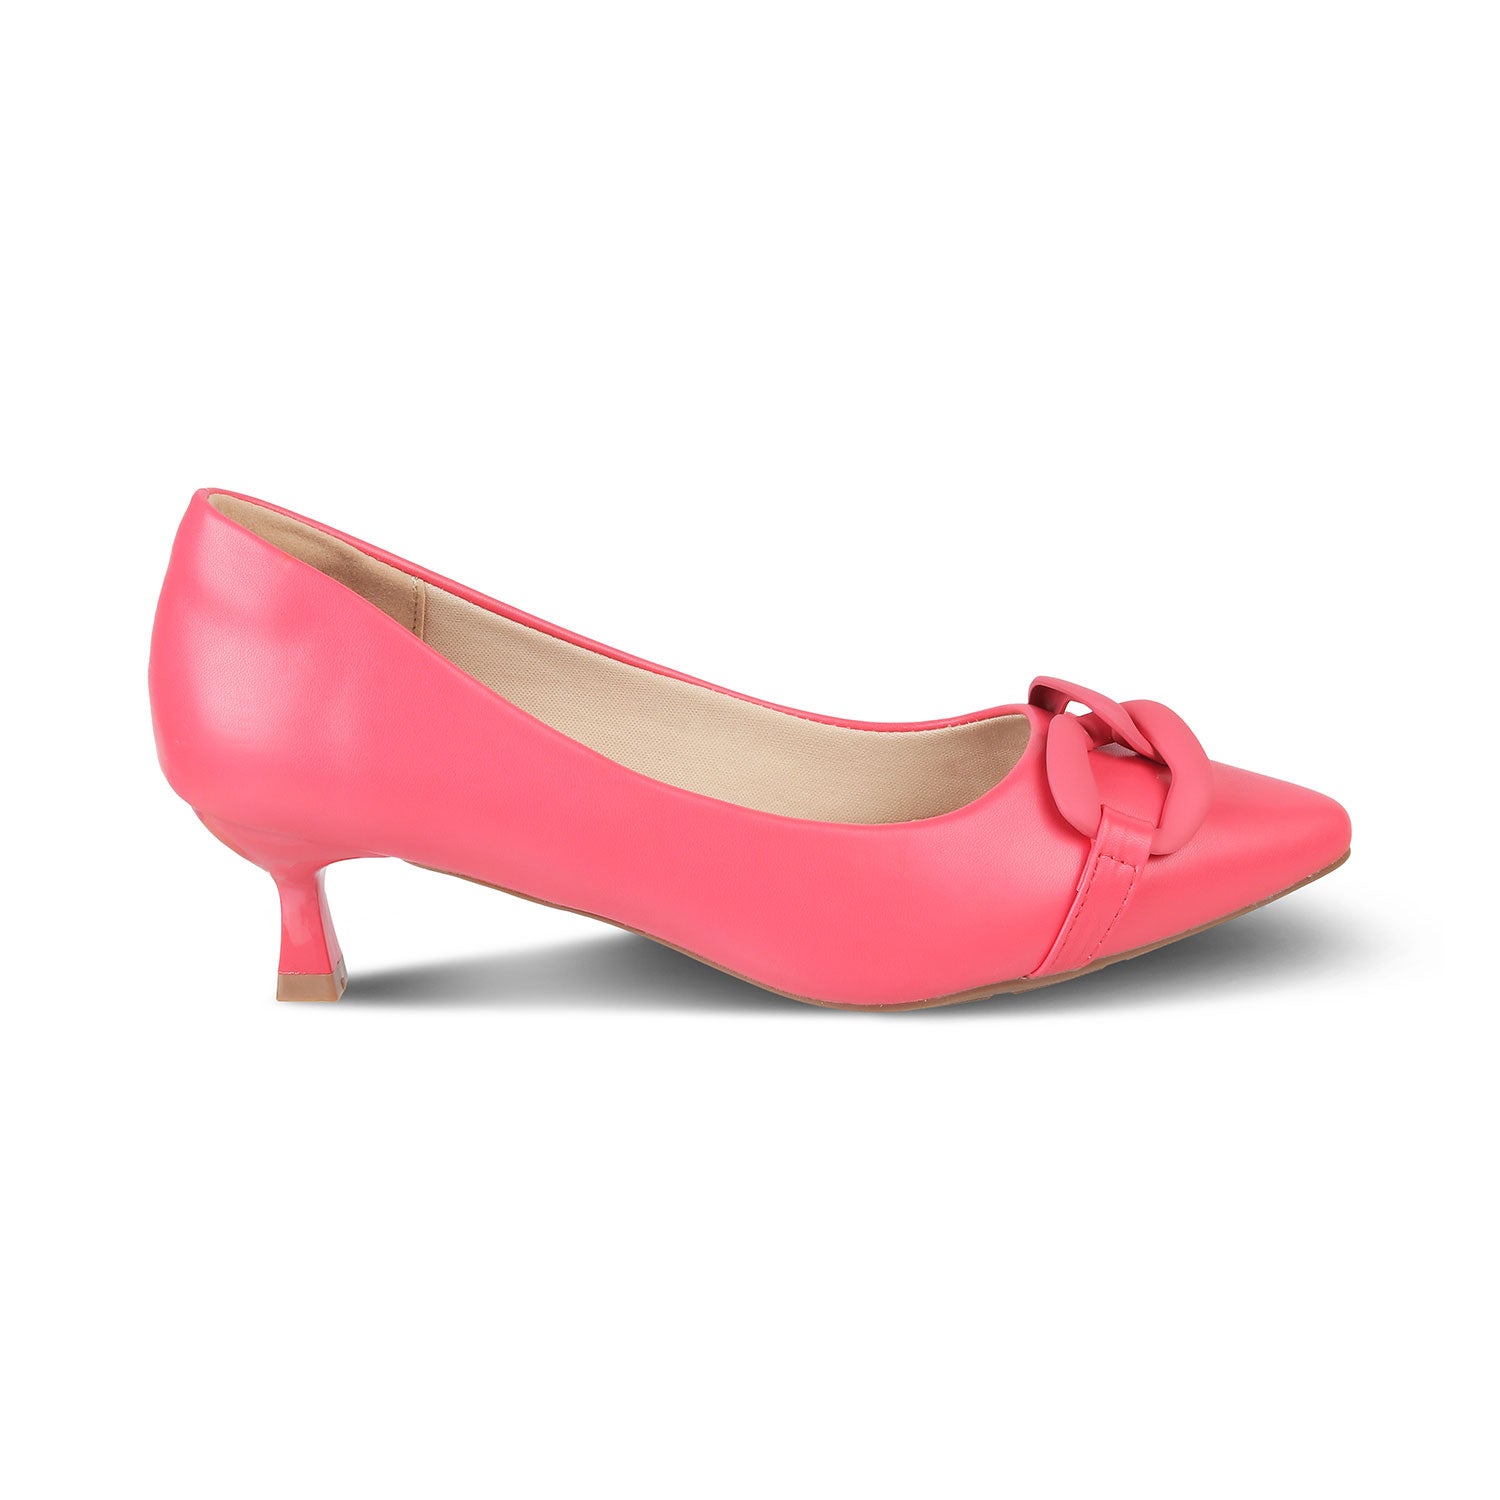 Tresmode-The Pesaro Pink Women's Kitten Heel Pumps Tresmode-Tresmode